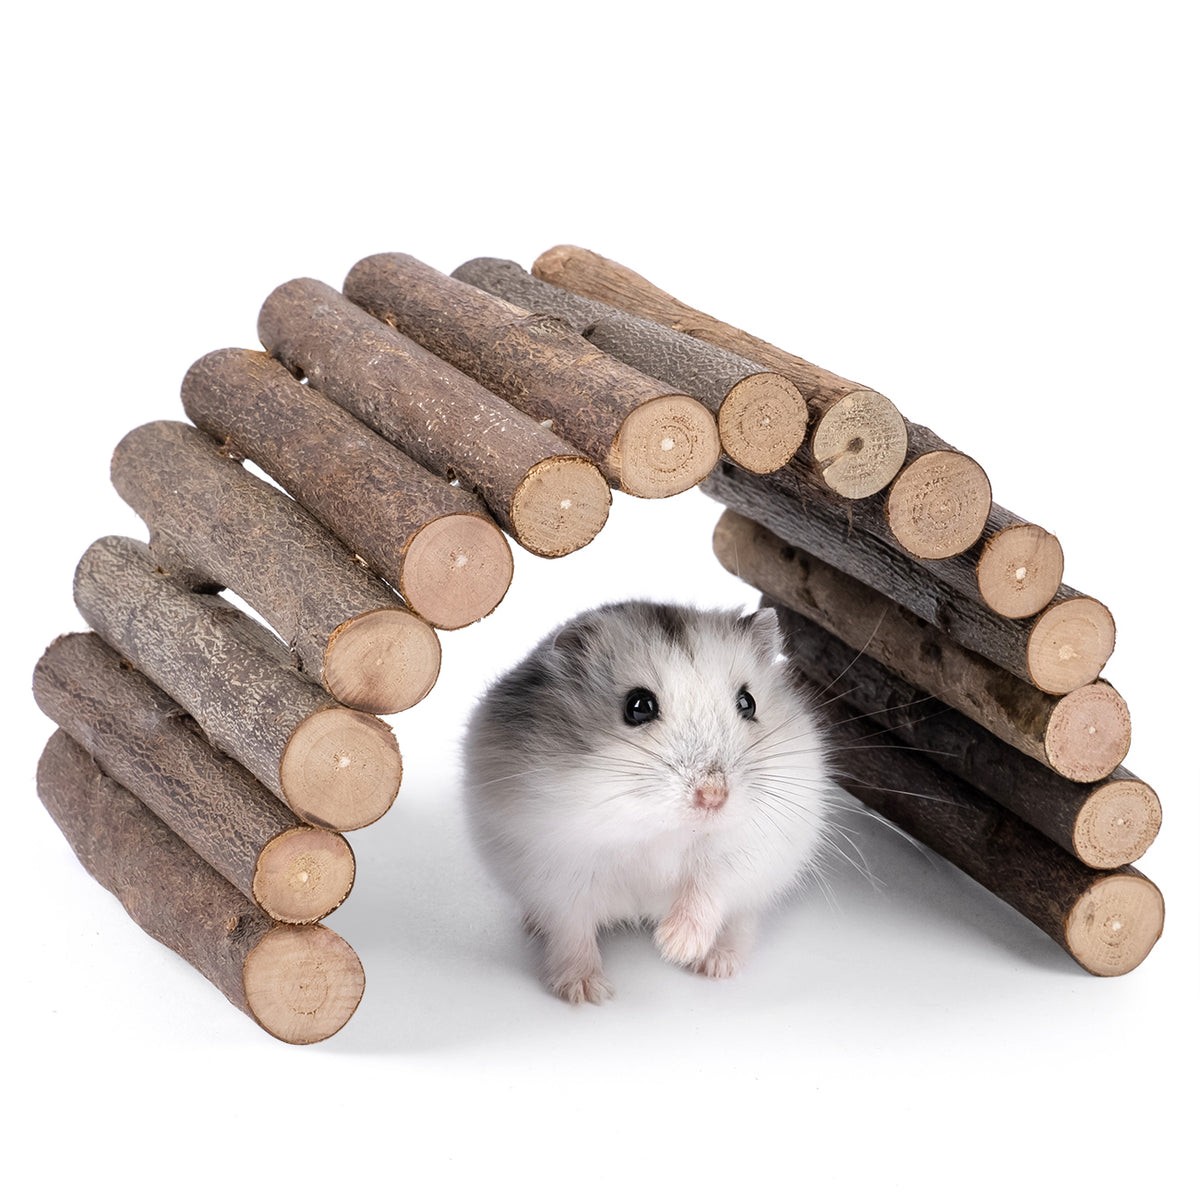 1. Niteangel wooden ladder bridge for small animals